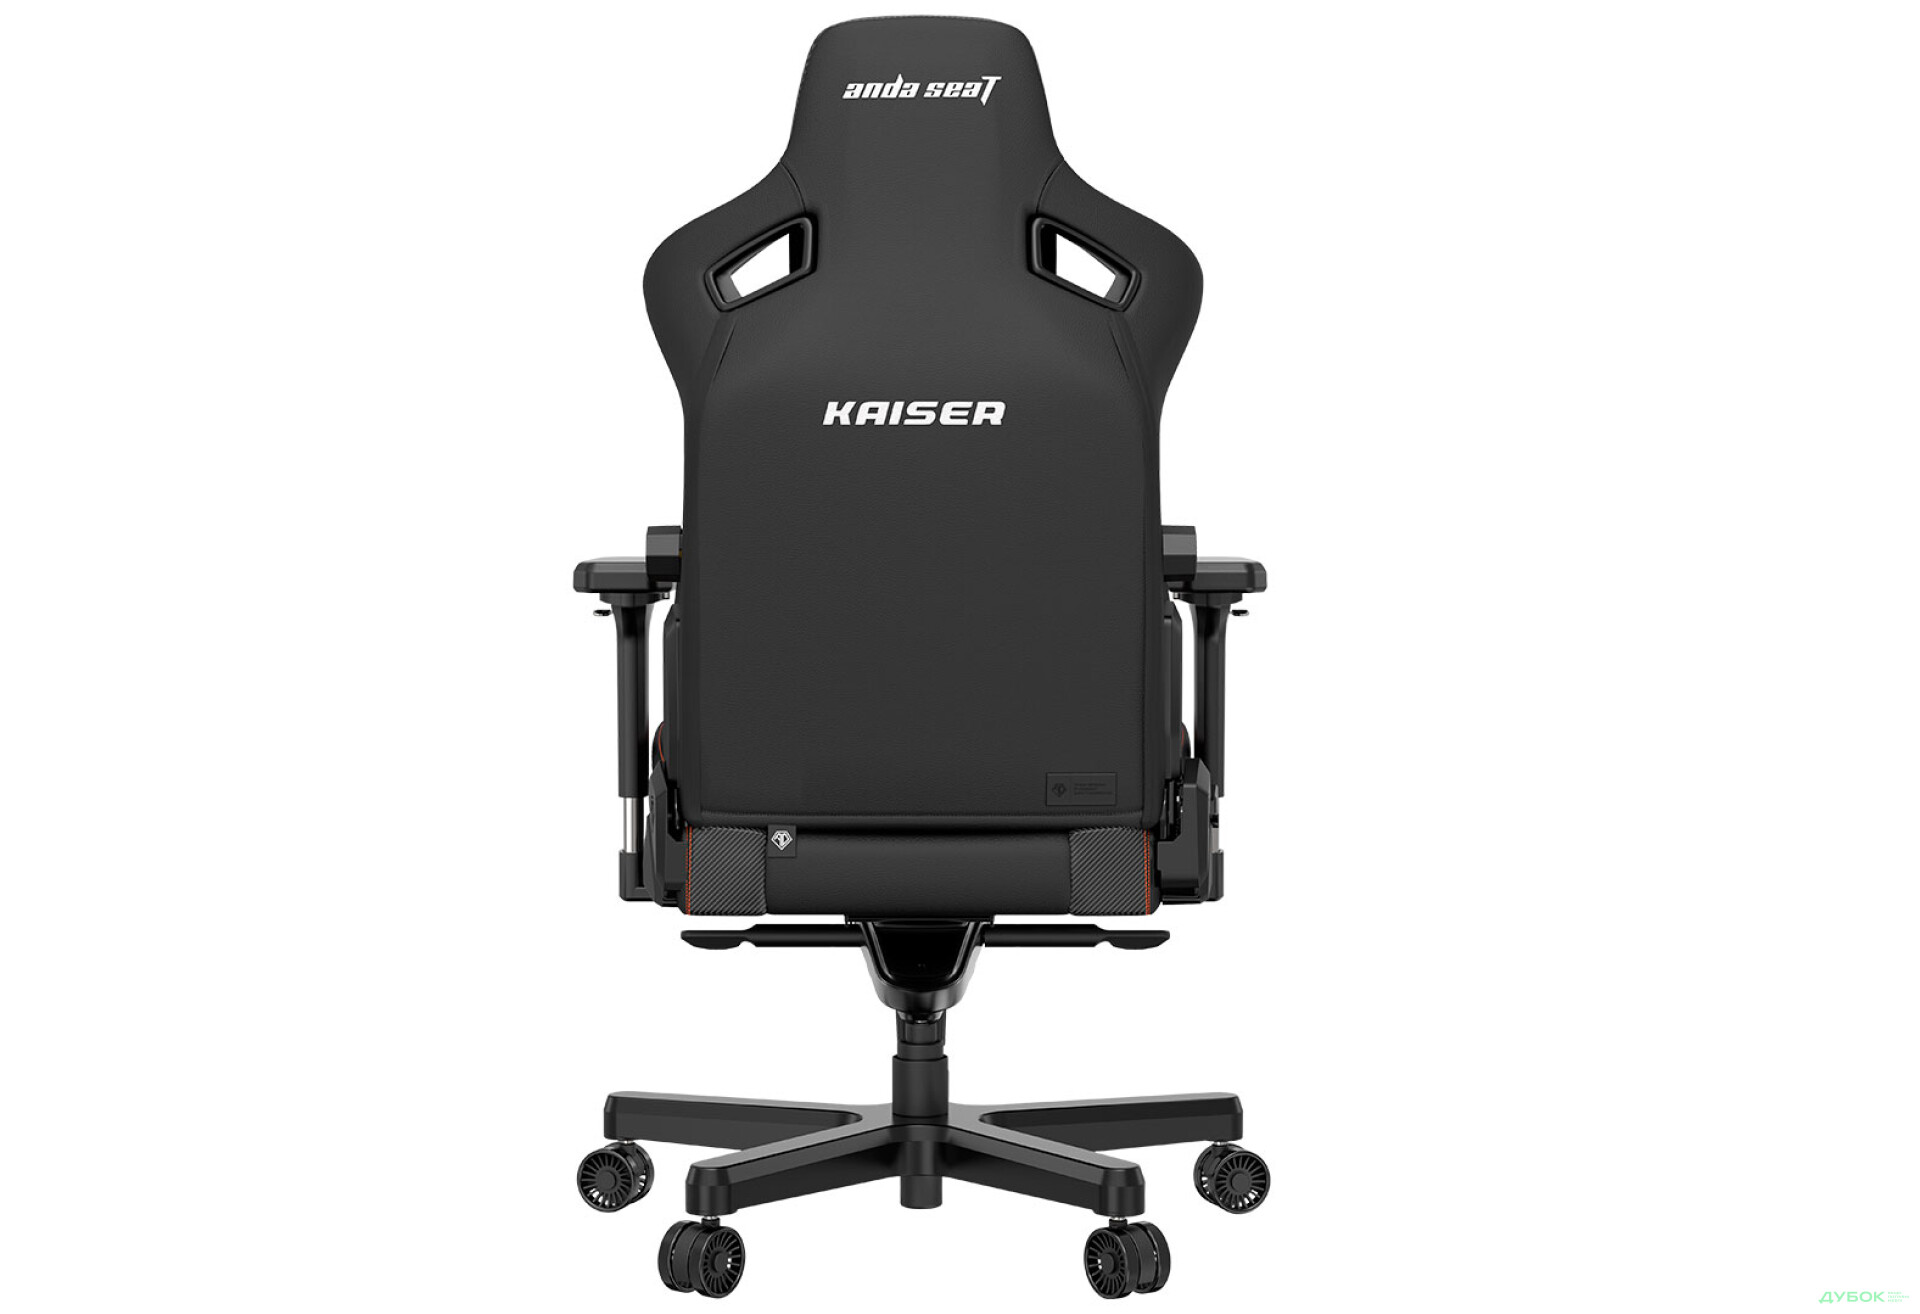 Фото 7 - Компьютерное кресло Anda Seat Kaiser 3 72x57x136 см игровое, черное